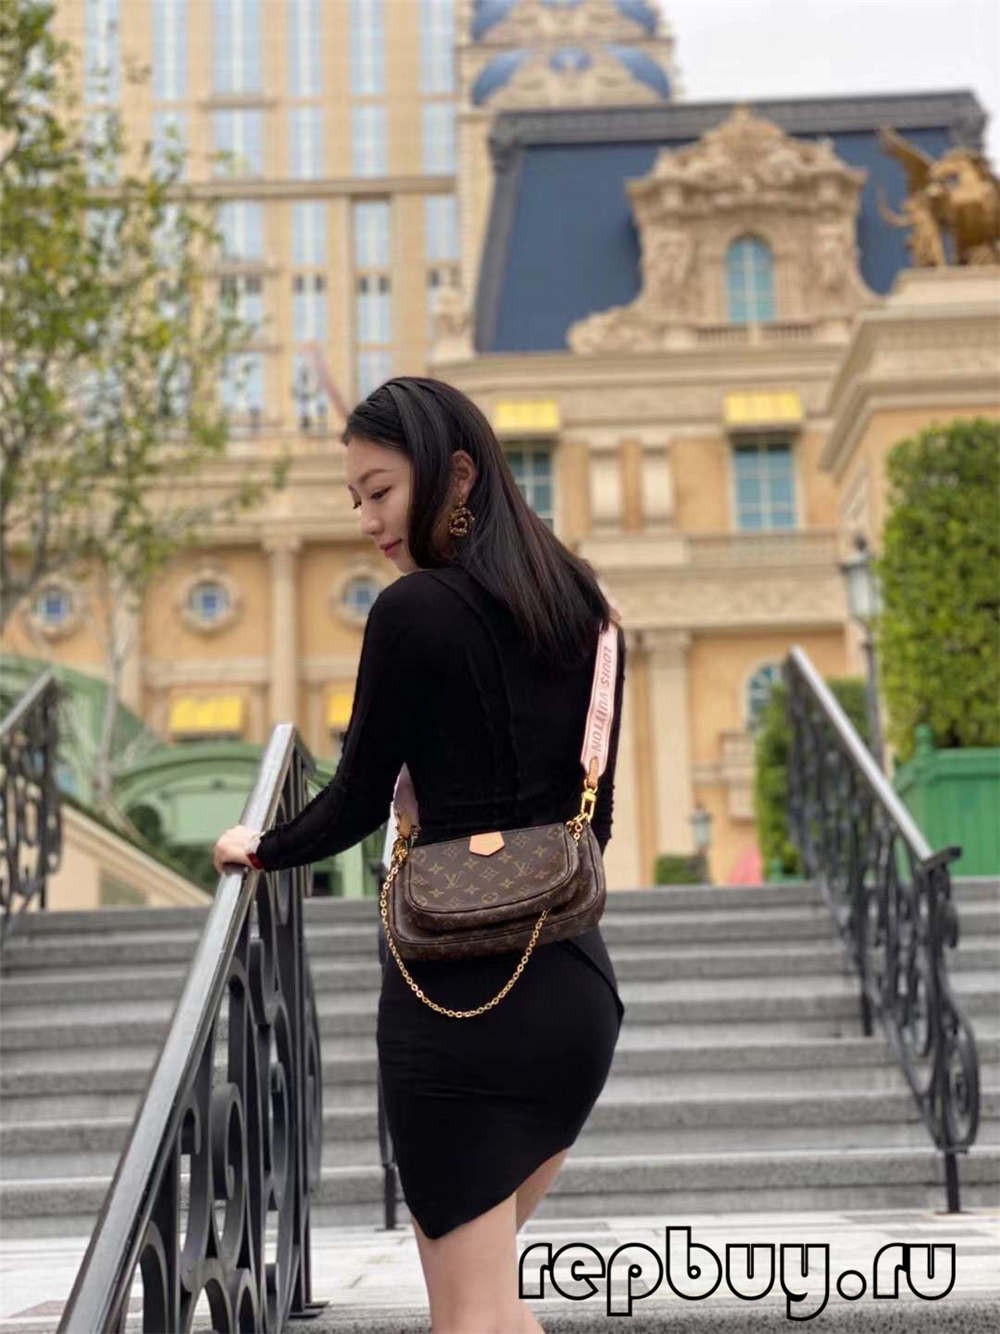 Louis Vuitton M44840 Multi Pochette 24cm Top Replica Bags Daily use effect (2022 Latest)-Beste Qualität gefälschte Louis Vuitton-Taschen Online-Shop, Replik-Designer-Tasche ru